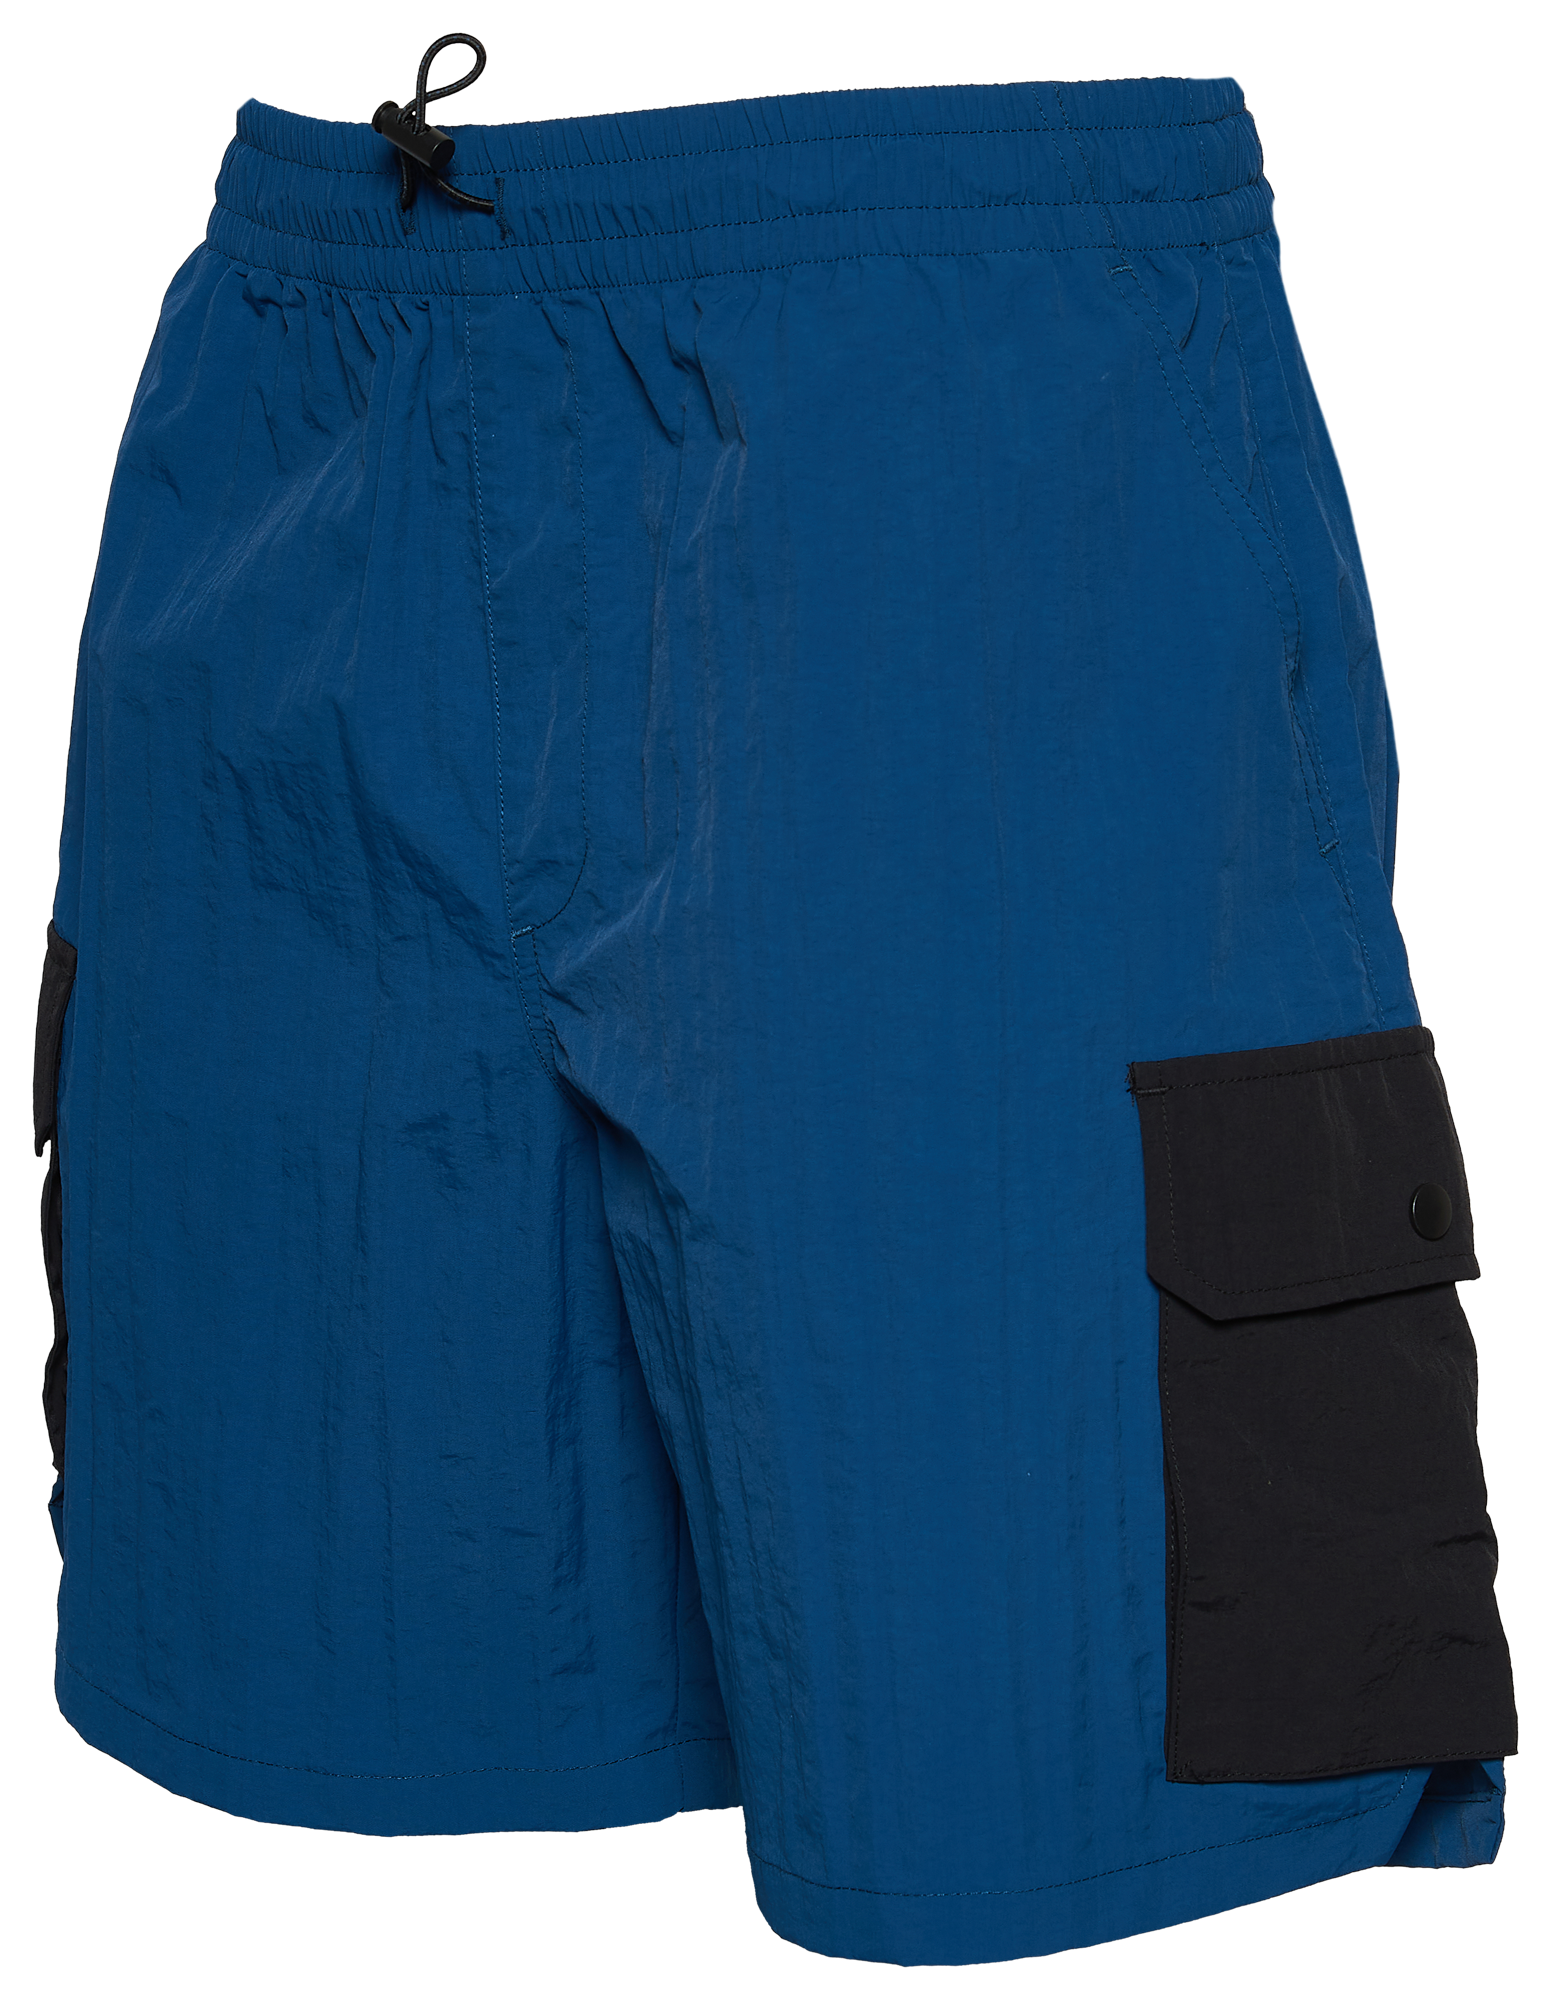 LCKR Highline Utility Shorts - Men's